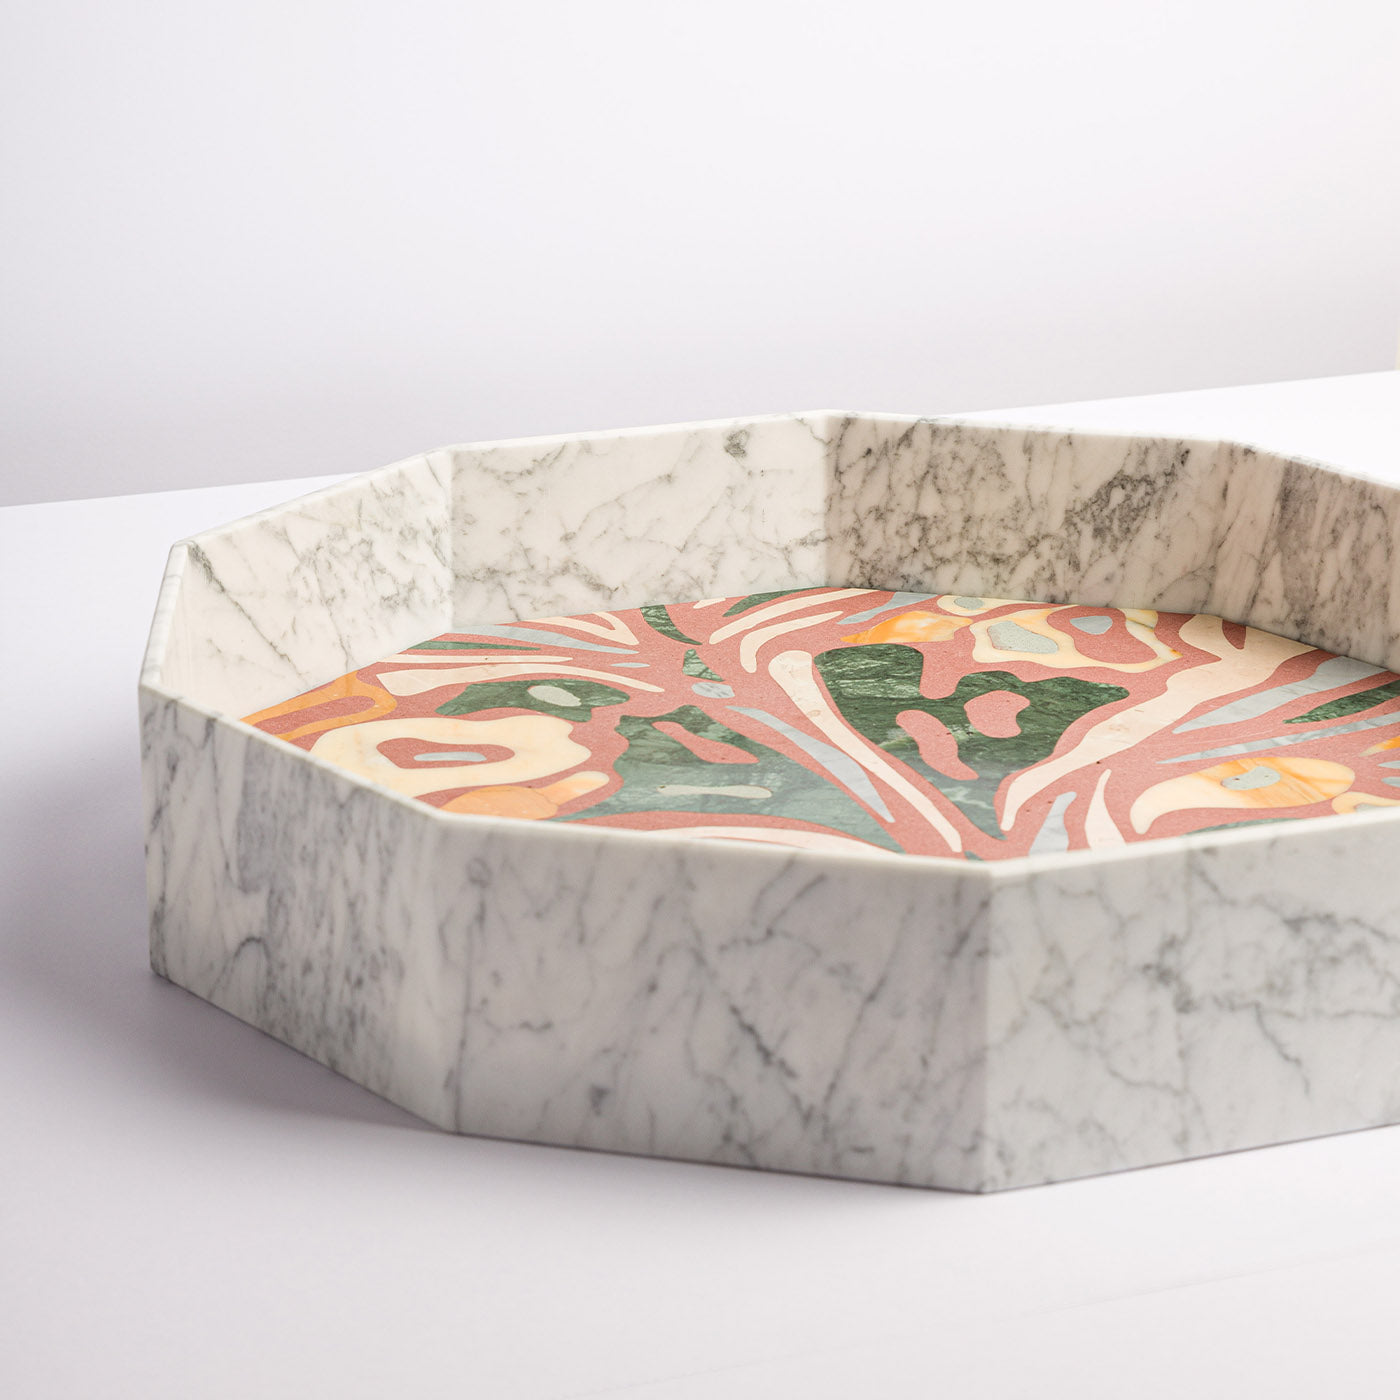 Marble Marbling Decagonal Tray by Zanellato&Bortotto #2 - Alternative view 3